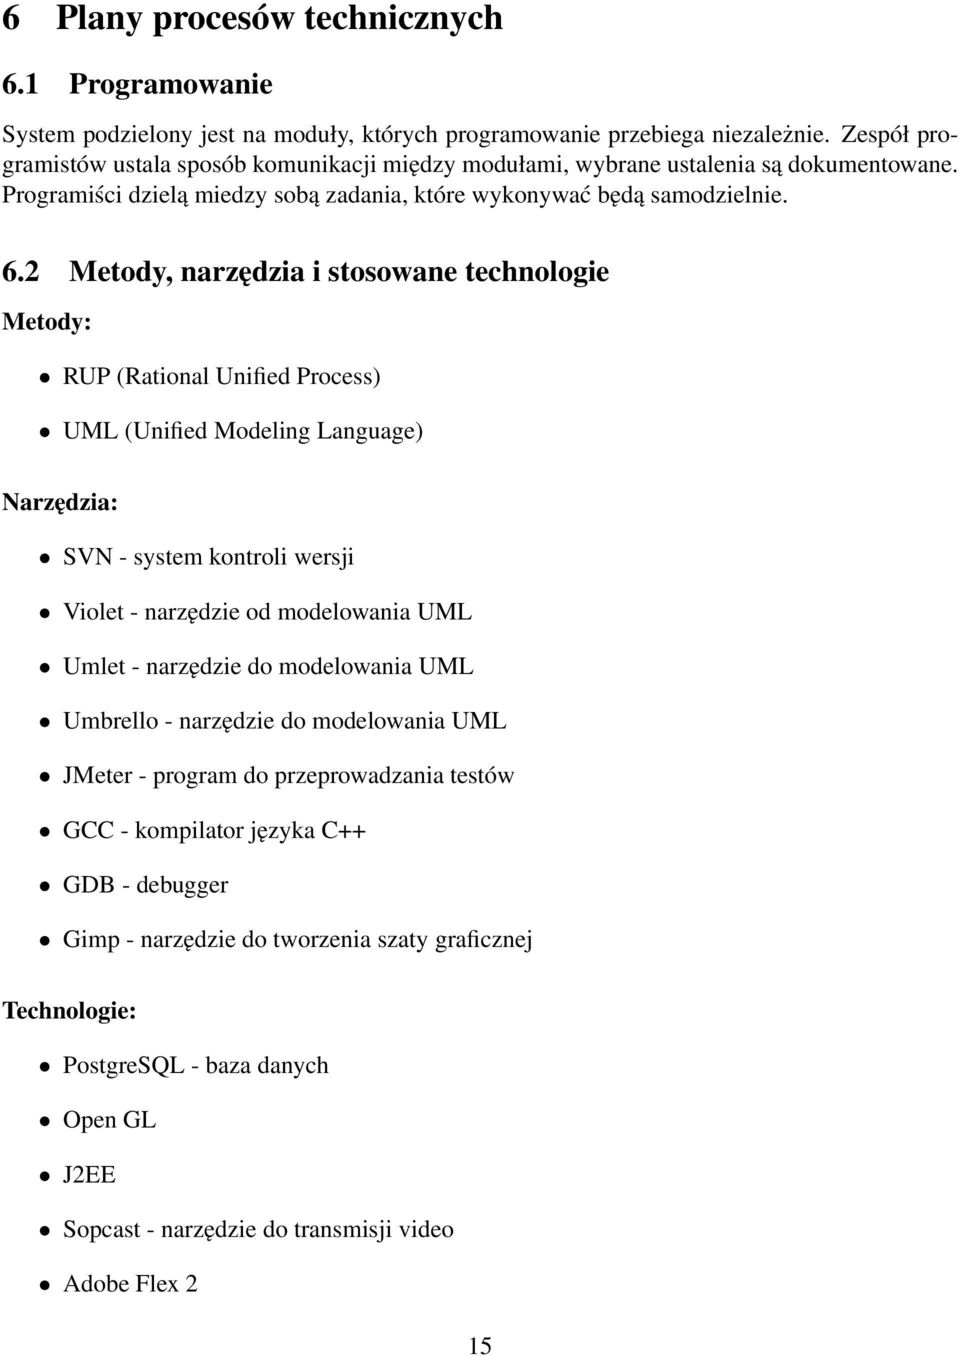 2 Metody, narzędzia i stosowane technologie Metody: RUP (Rational Unified Process) UML (Unified Modeling Language) Narzędzia: SVN - system kontroli wersji Violet - narzędzie od modelowania UML Umlet